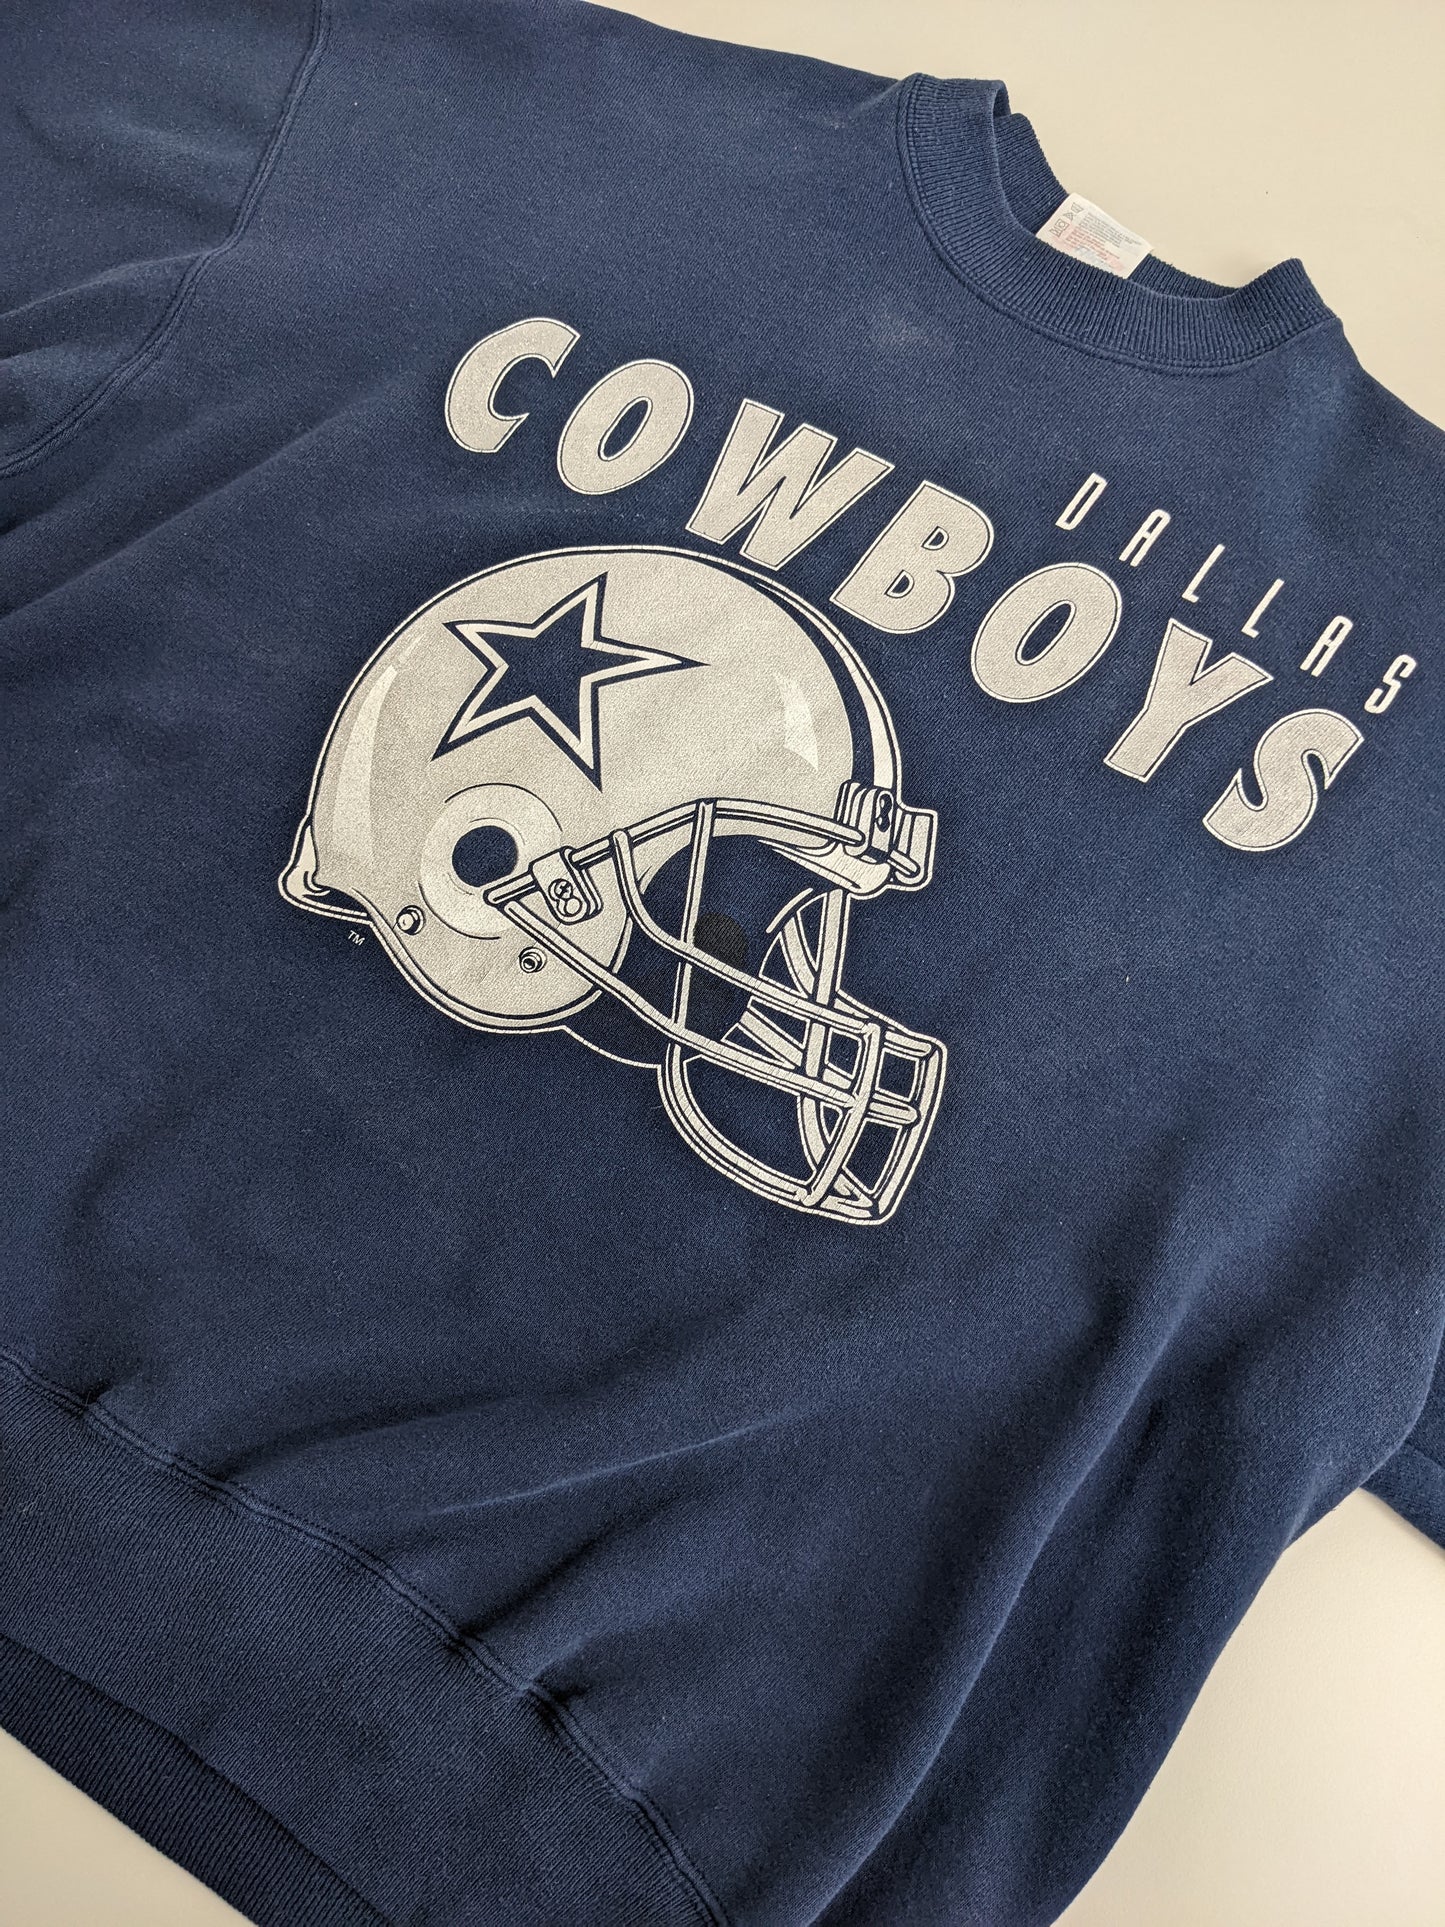 90s Hanes Dallas Cowboys NFL Sweatshirt Navy  L/XL